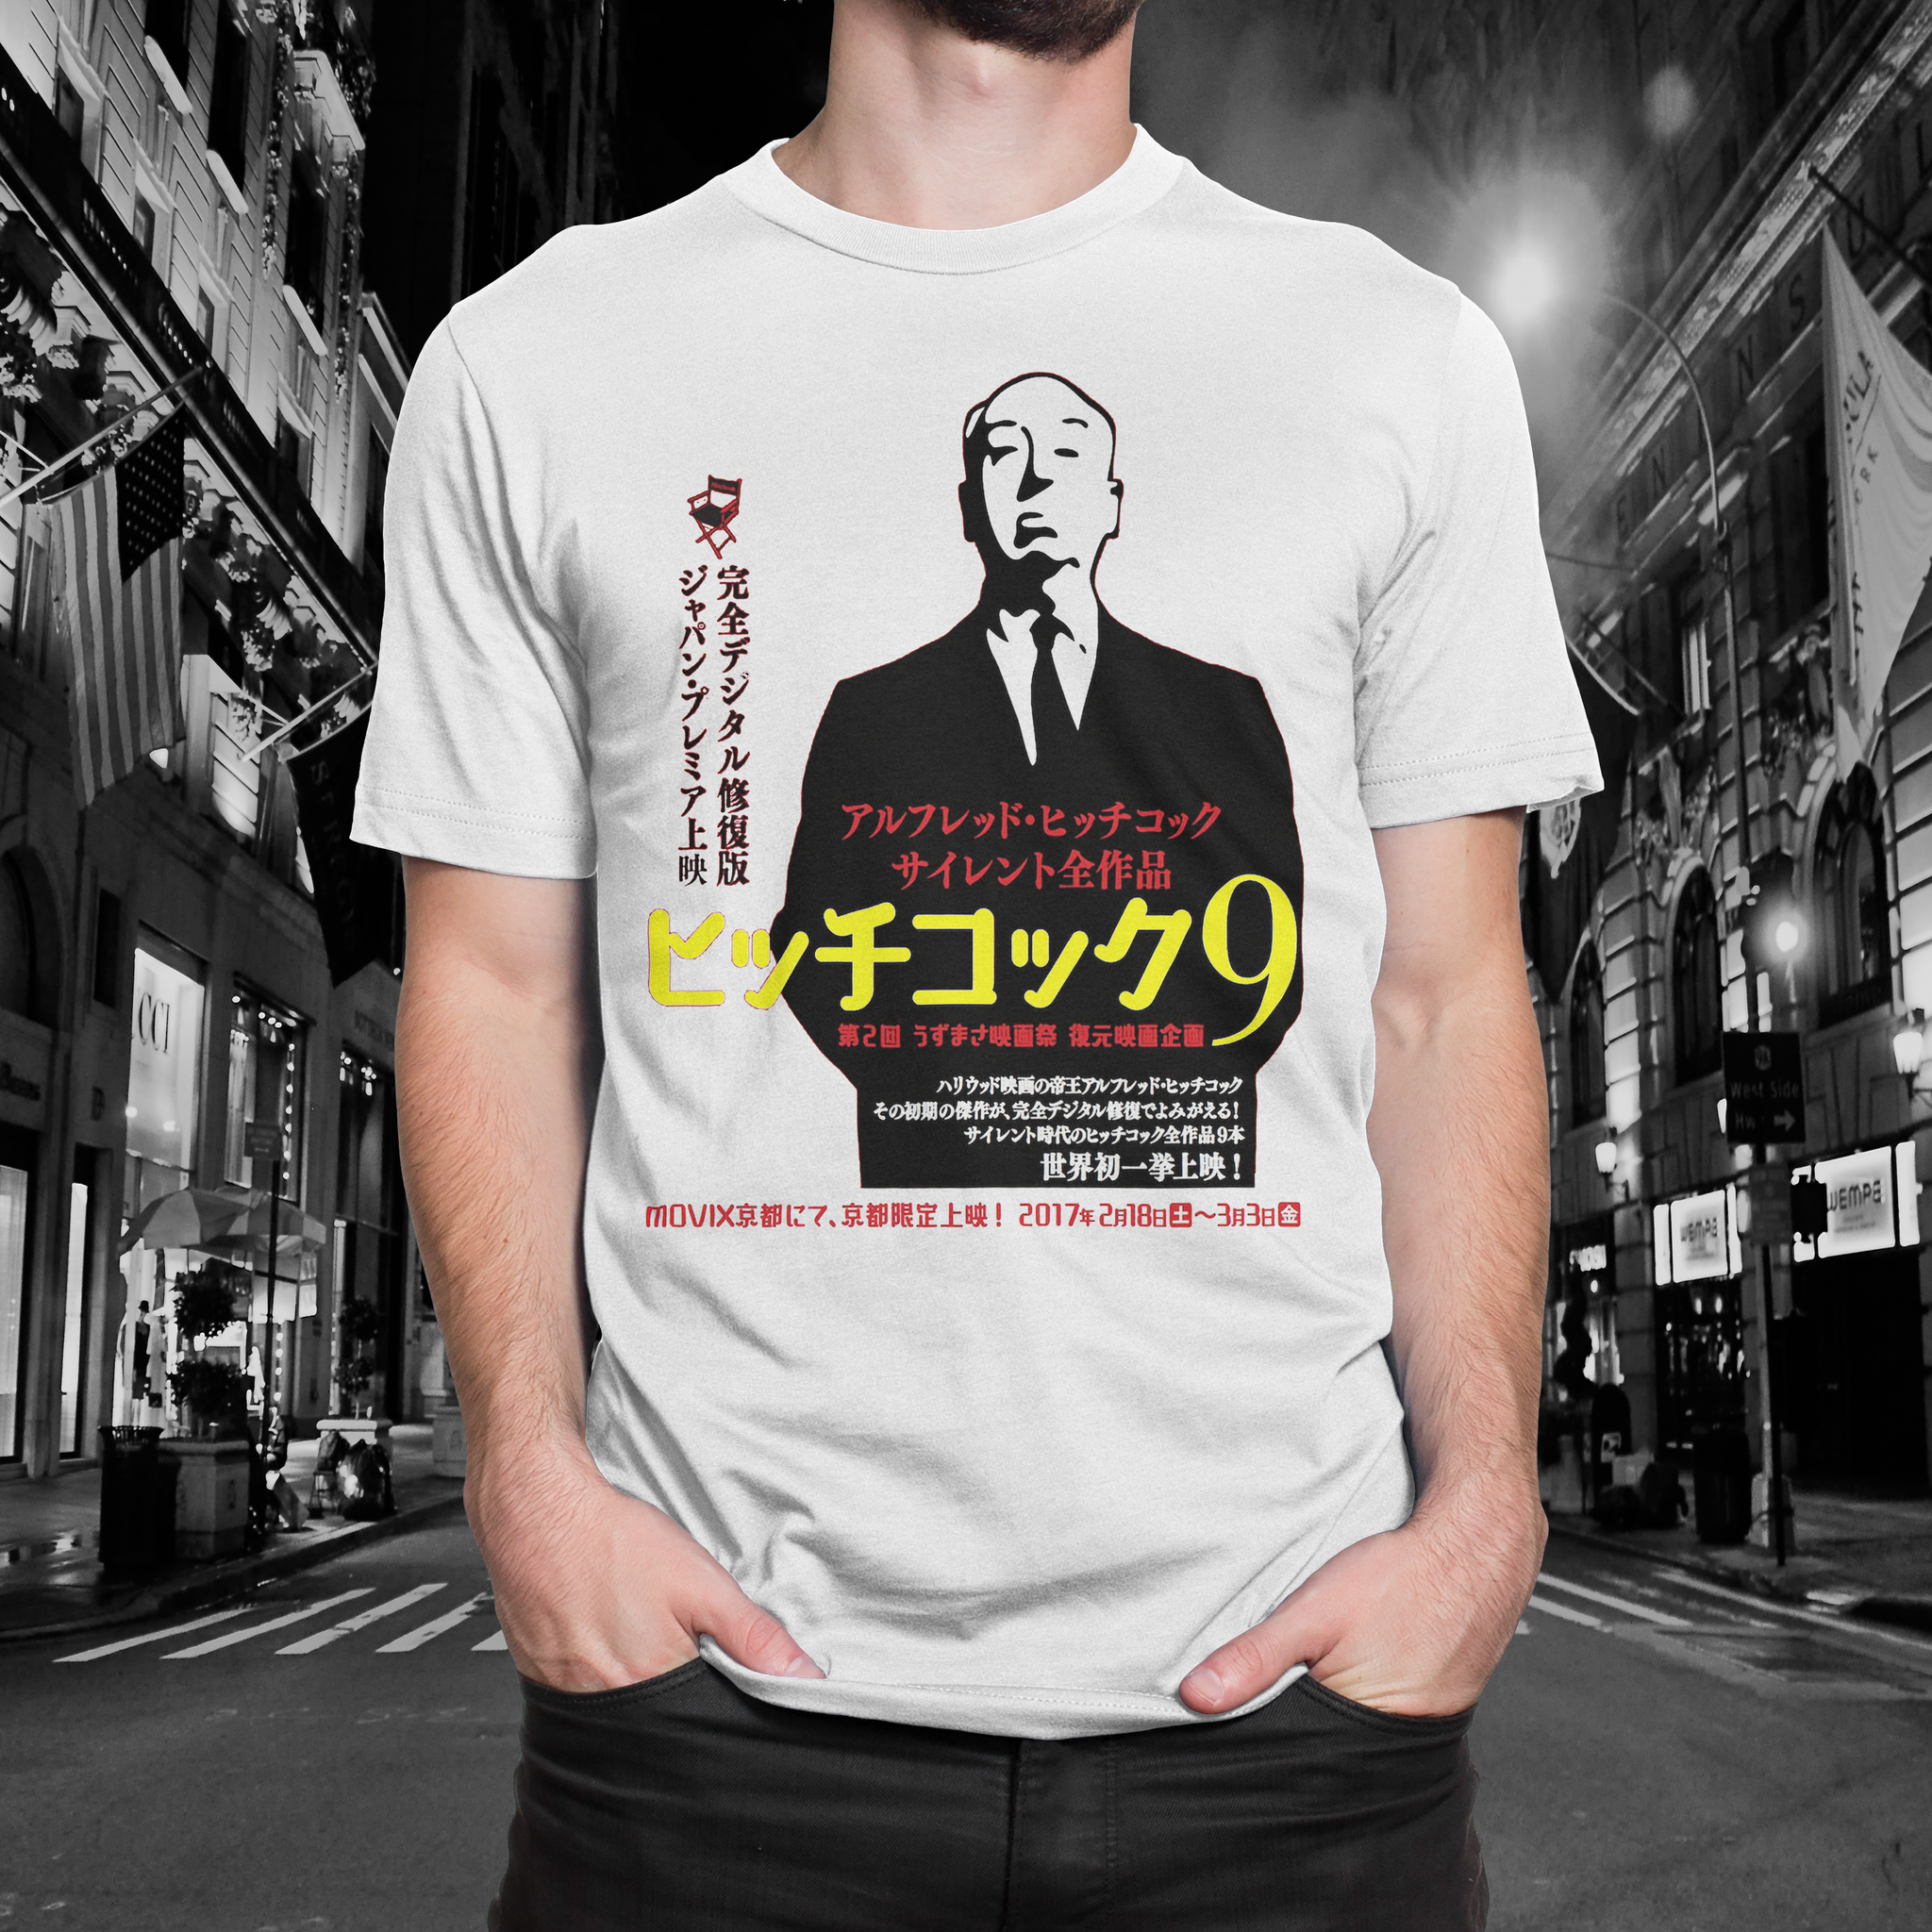 The Genius Of Hitchcock "Japan" Tee